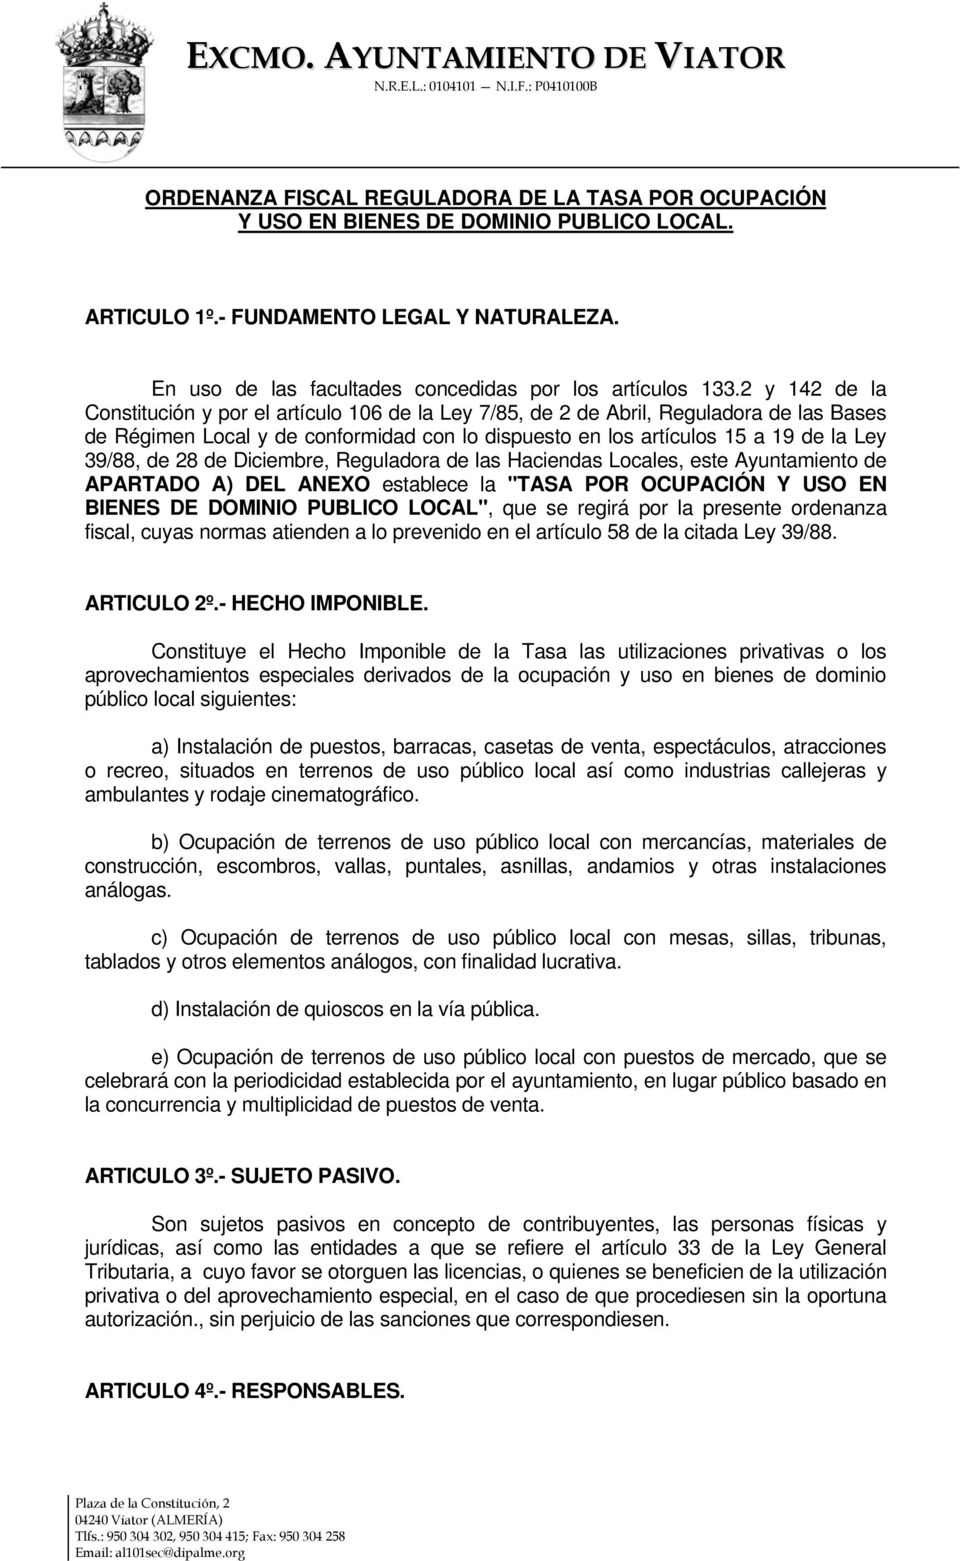 28 de Diciembre, Reguladora de las Haciendas Locales, este Ayuntamiento de APARTADO A) DEL ANEXO establece la "TASA POR OCUPACIÓN Y USO EN BIENES DE DOMINIO PUBLICO LOCAL", que se regirá por la